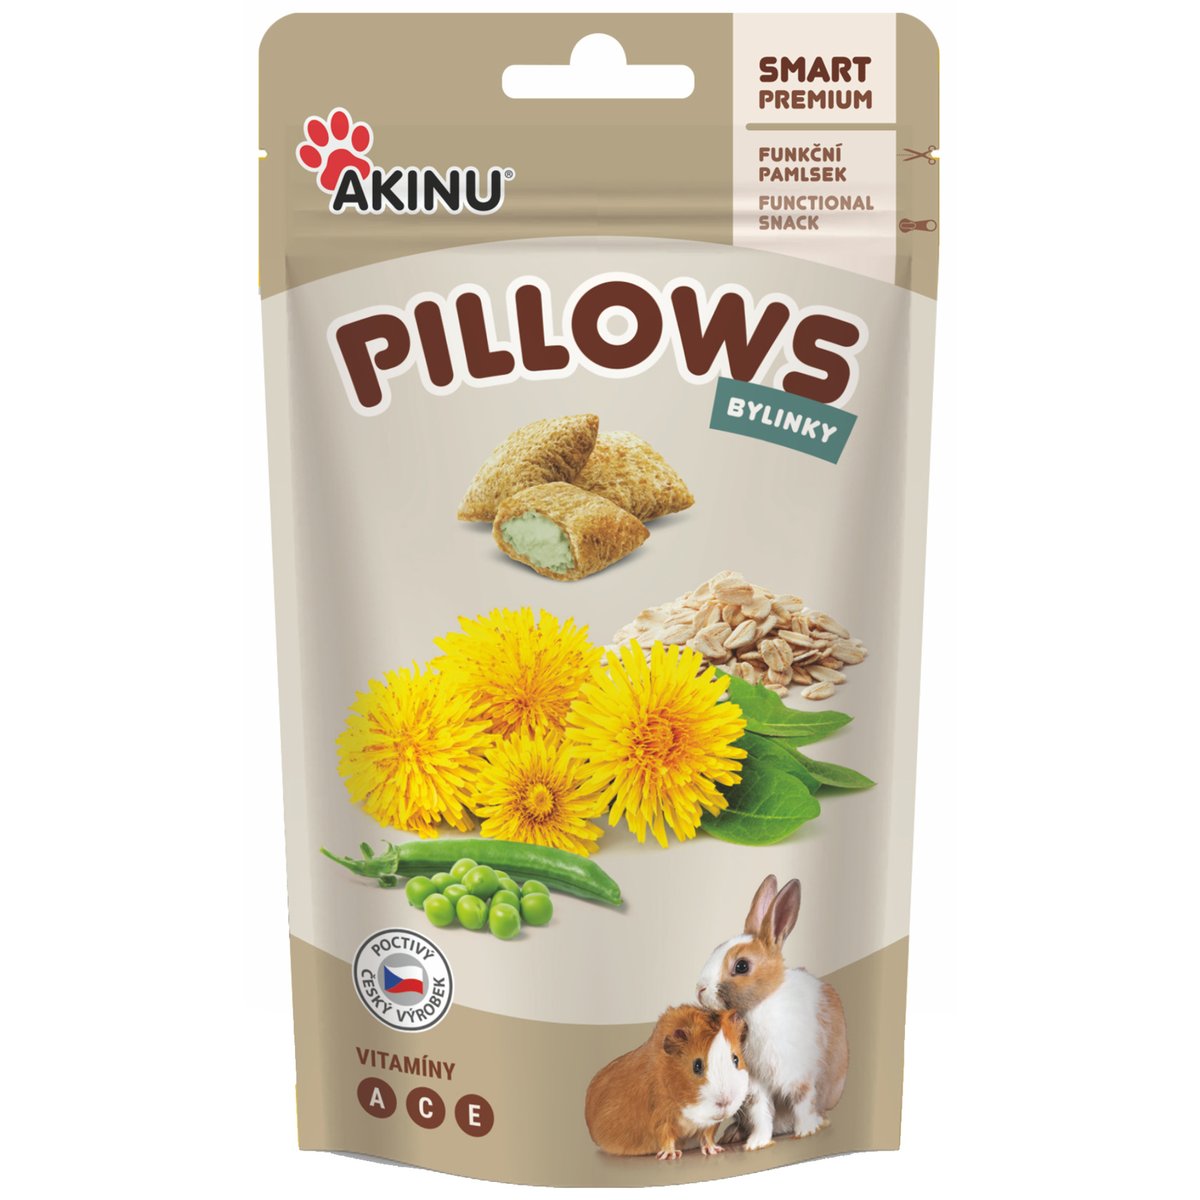 Akinu Pillows Polštářky s bylinkami pamlsek pro hlodavce